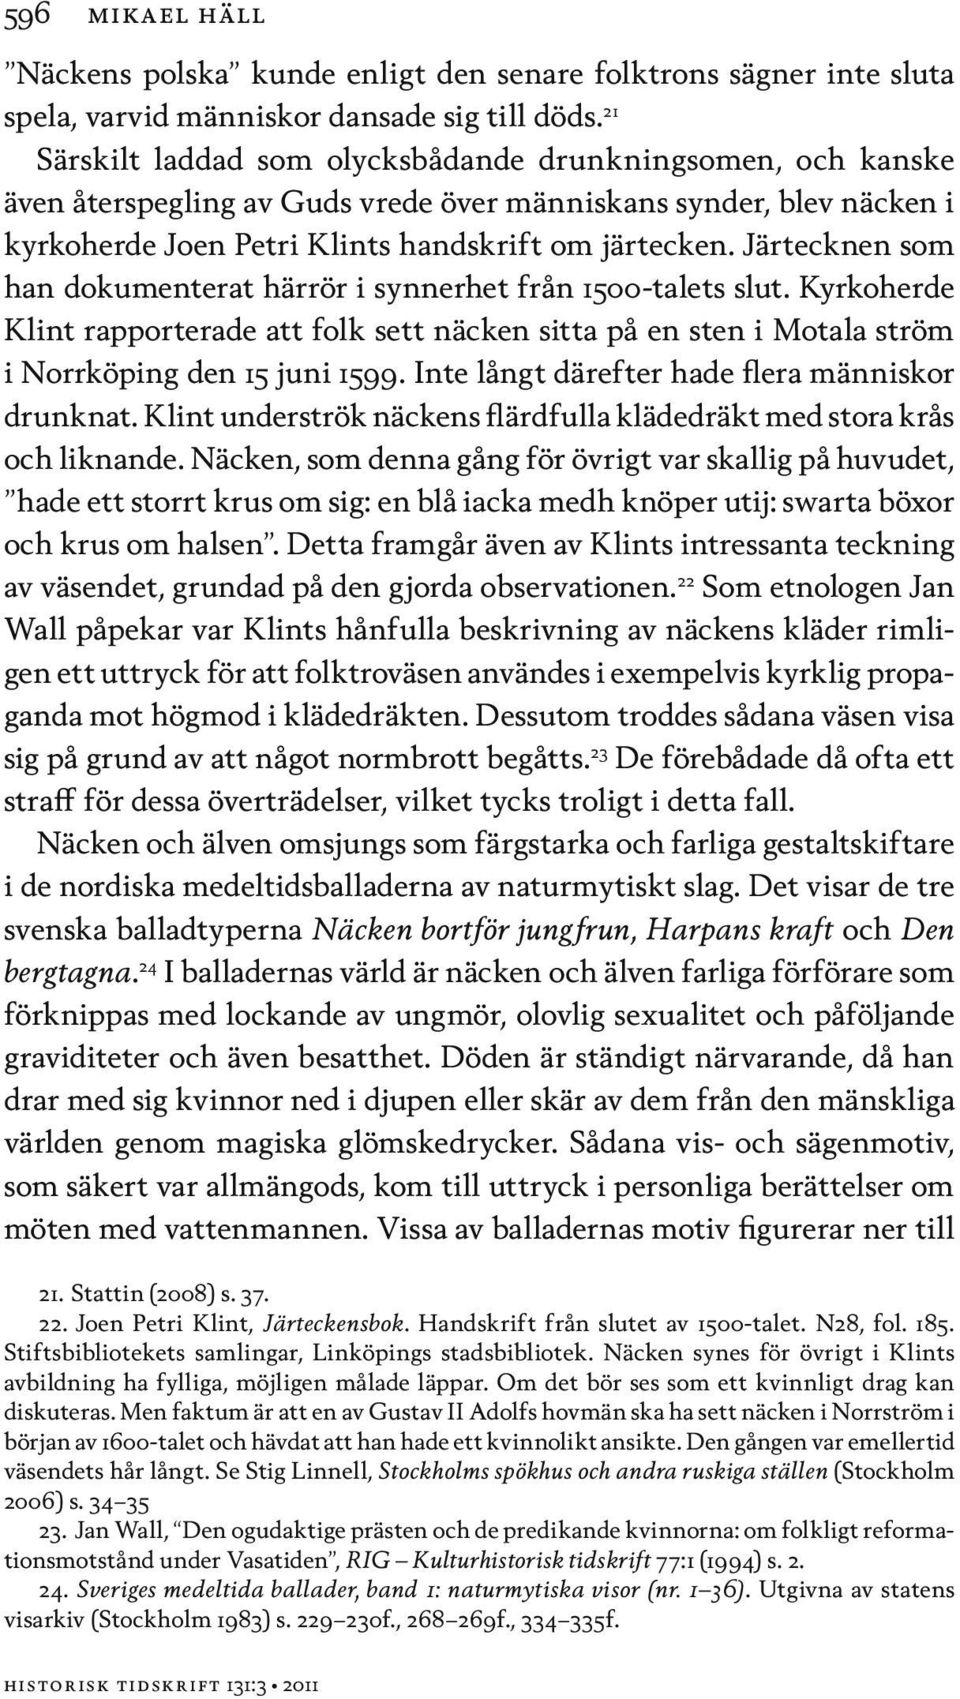 Järtecknen som han dokumenterat härrör i synnerhet från 1500-talets slut. Kyrkoherde Klint rapporterade att folk sett näcken sitta på en sten i Motala ström i Norrköping den 15 juni 1599.